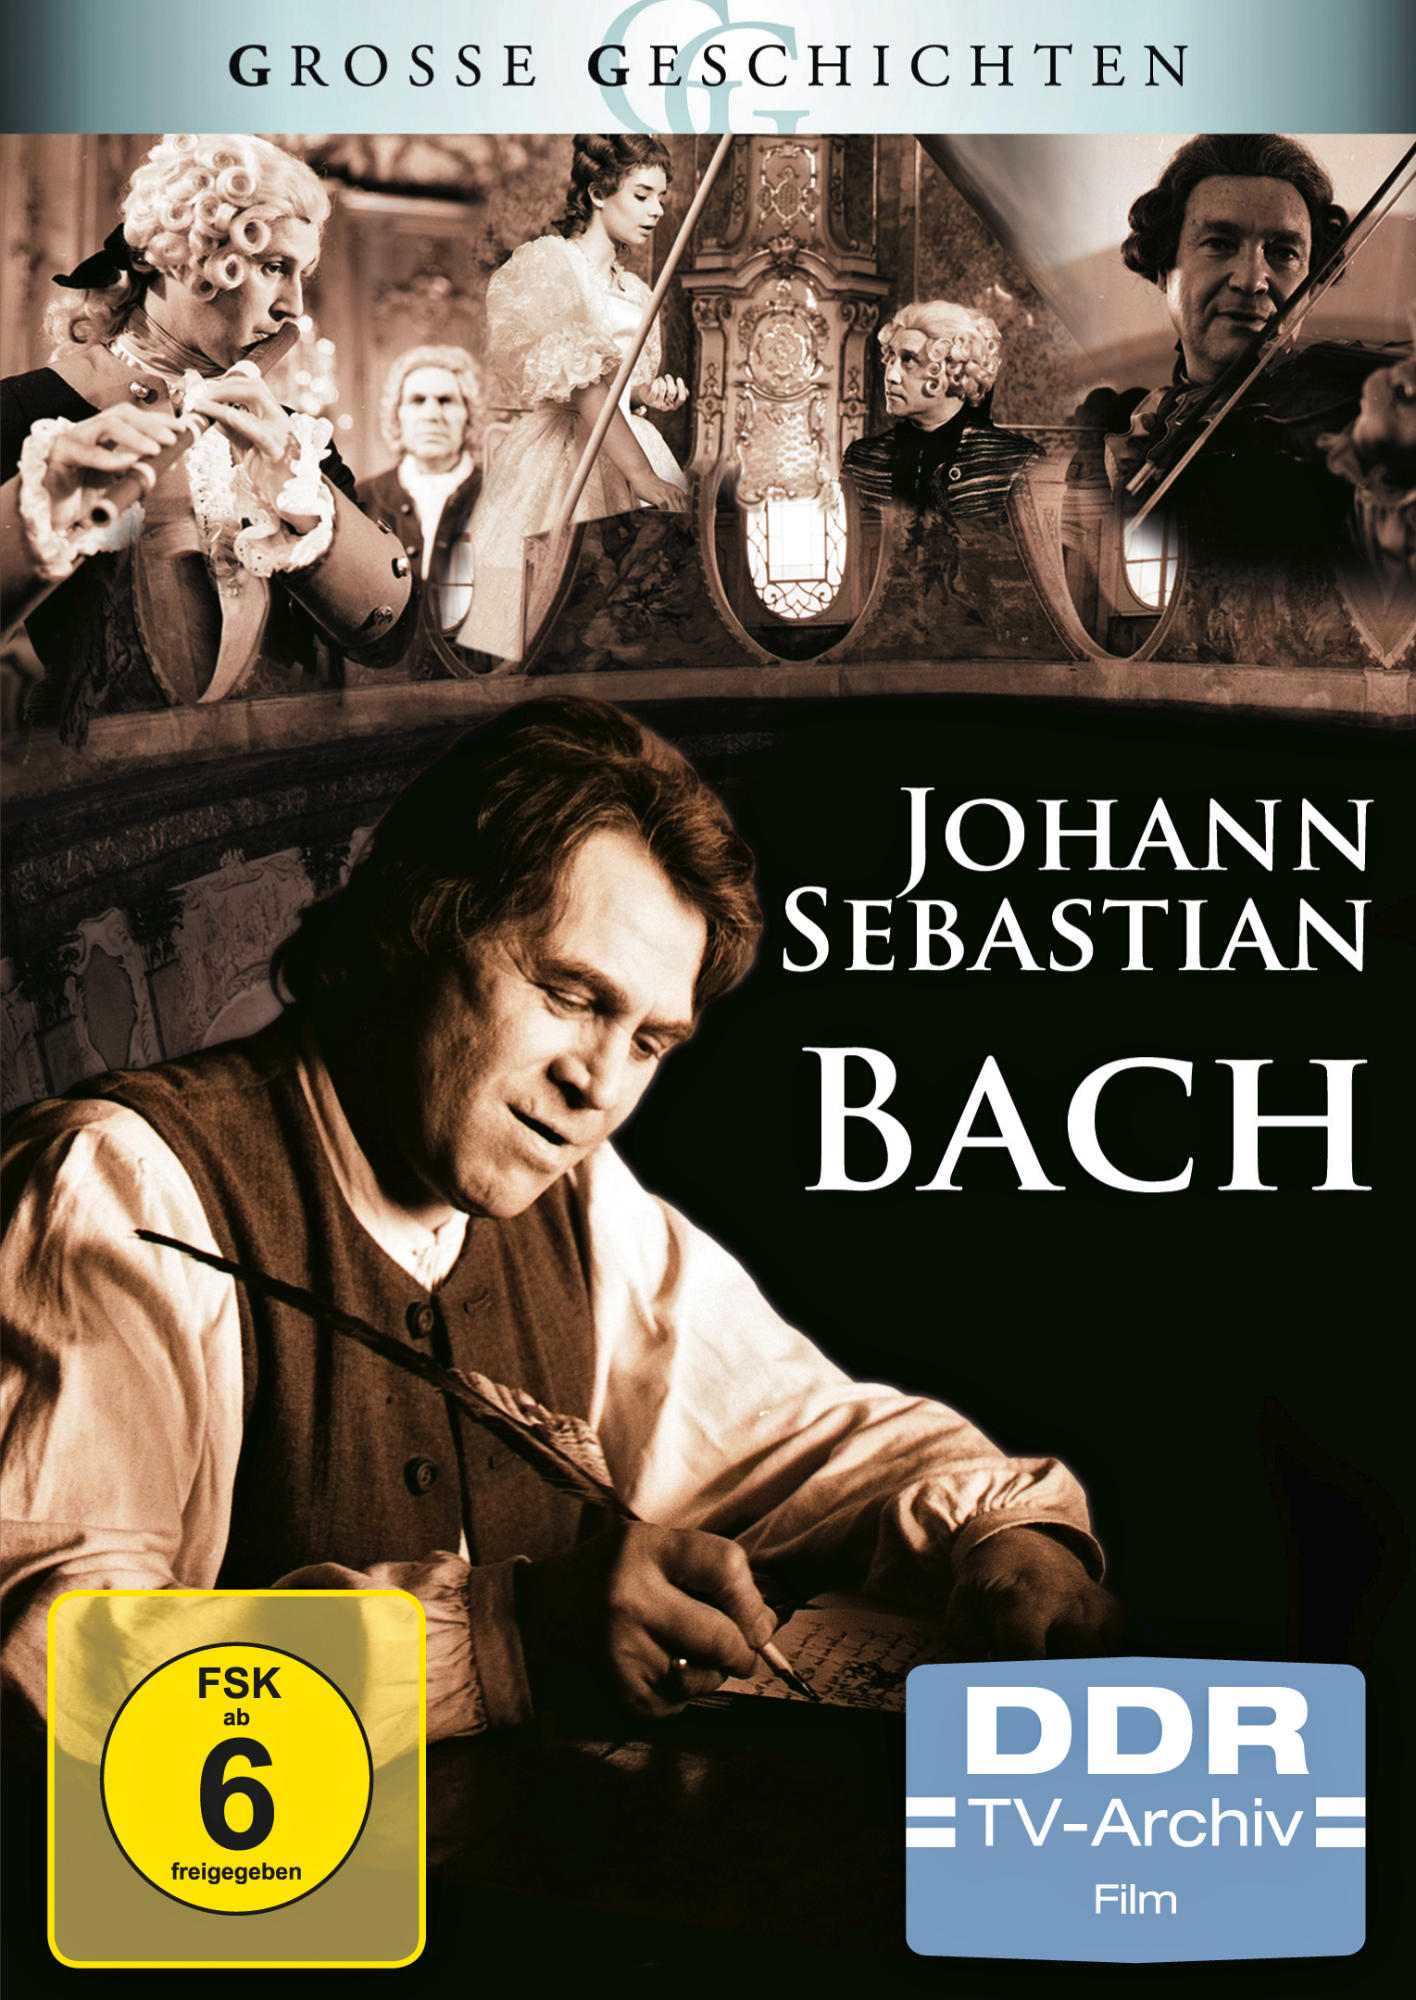 SEBASTIAN BACH DVD JOHANN GESCHICHTEN) (GROSSE